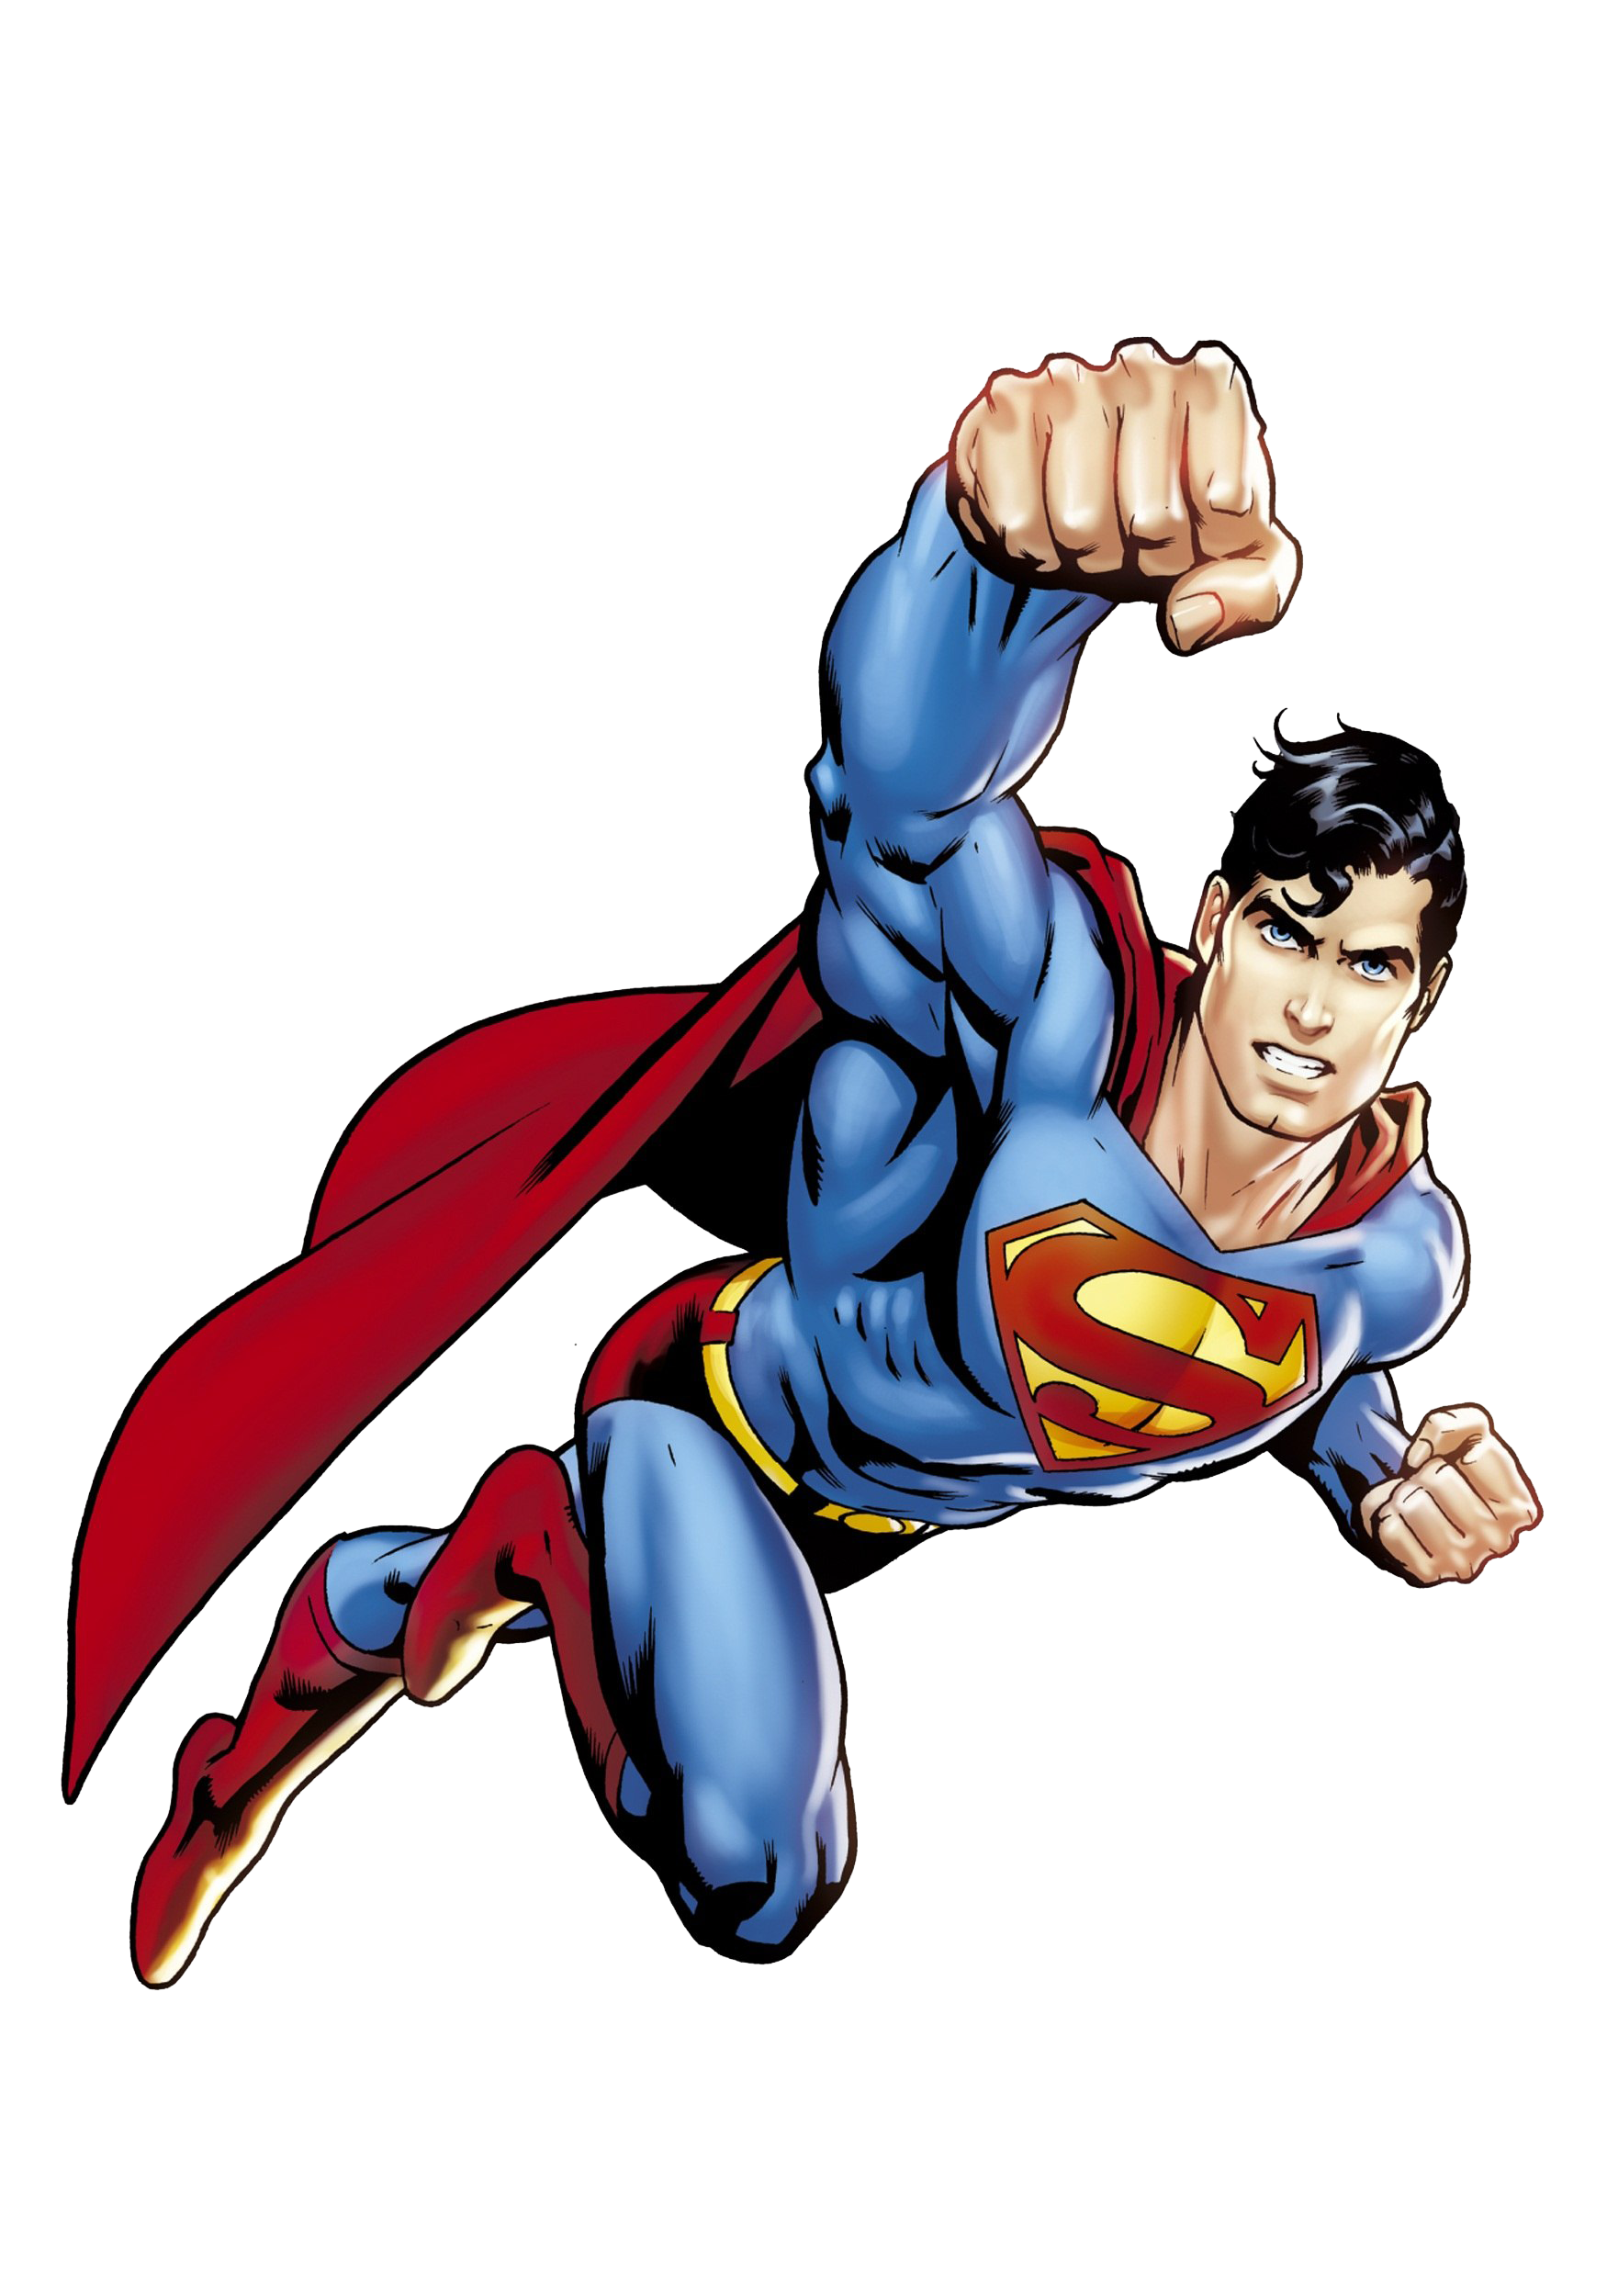 Superman Flying PNG Image Transparent Background